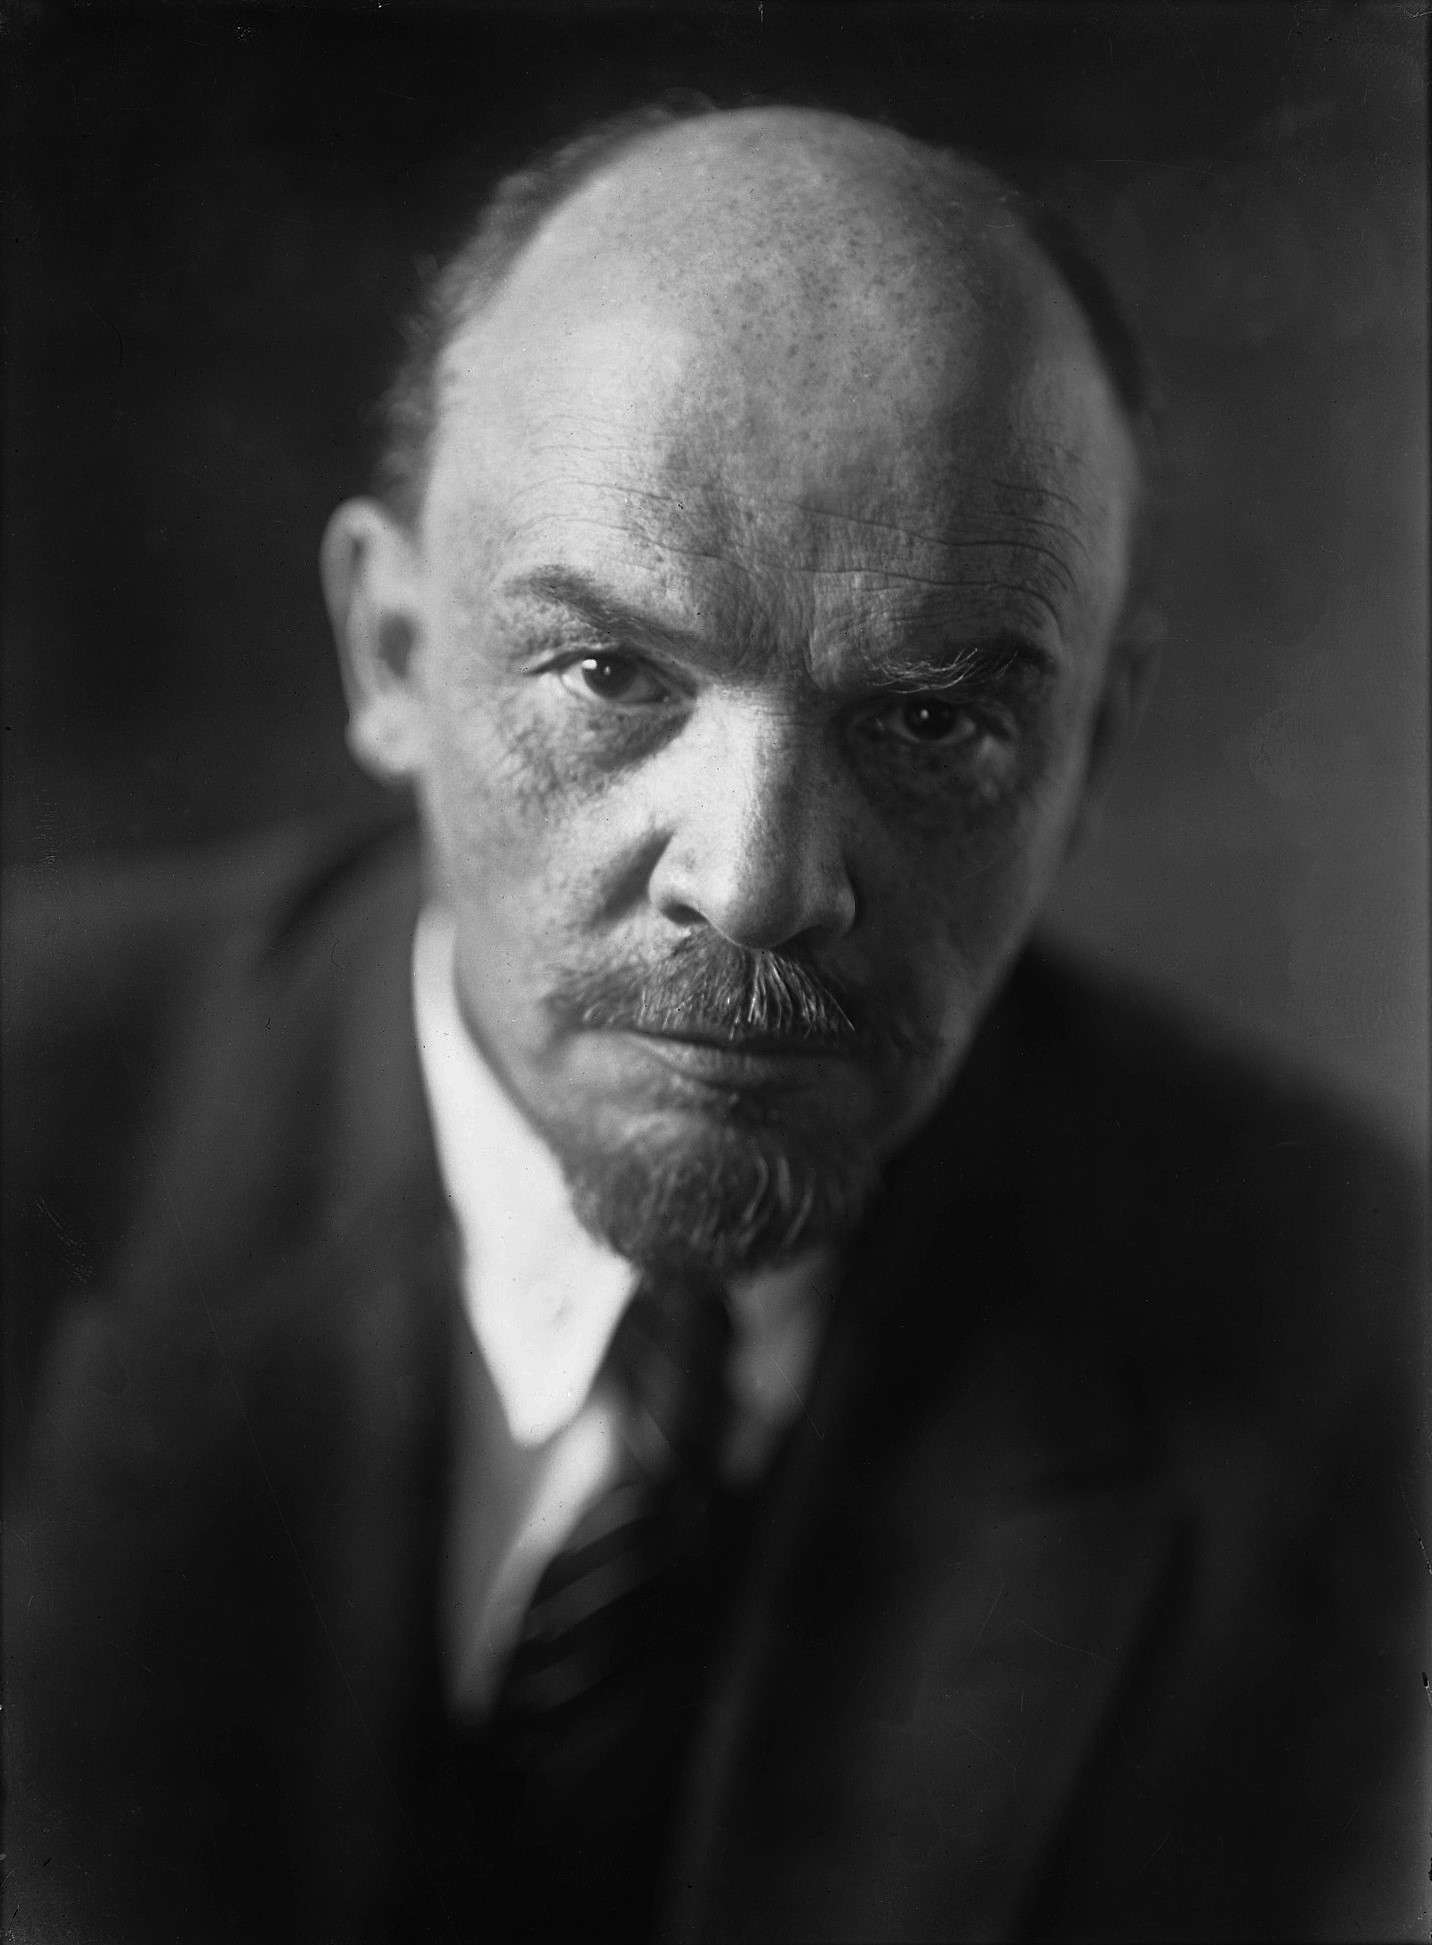 100 vjet nga vdekja e Leninit, trashëgimia e tij e keqe vazhdon të jetojë